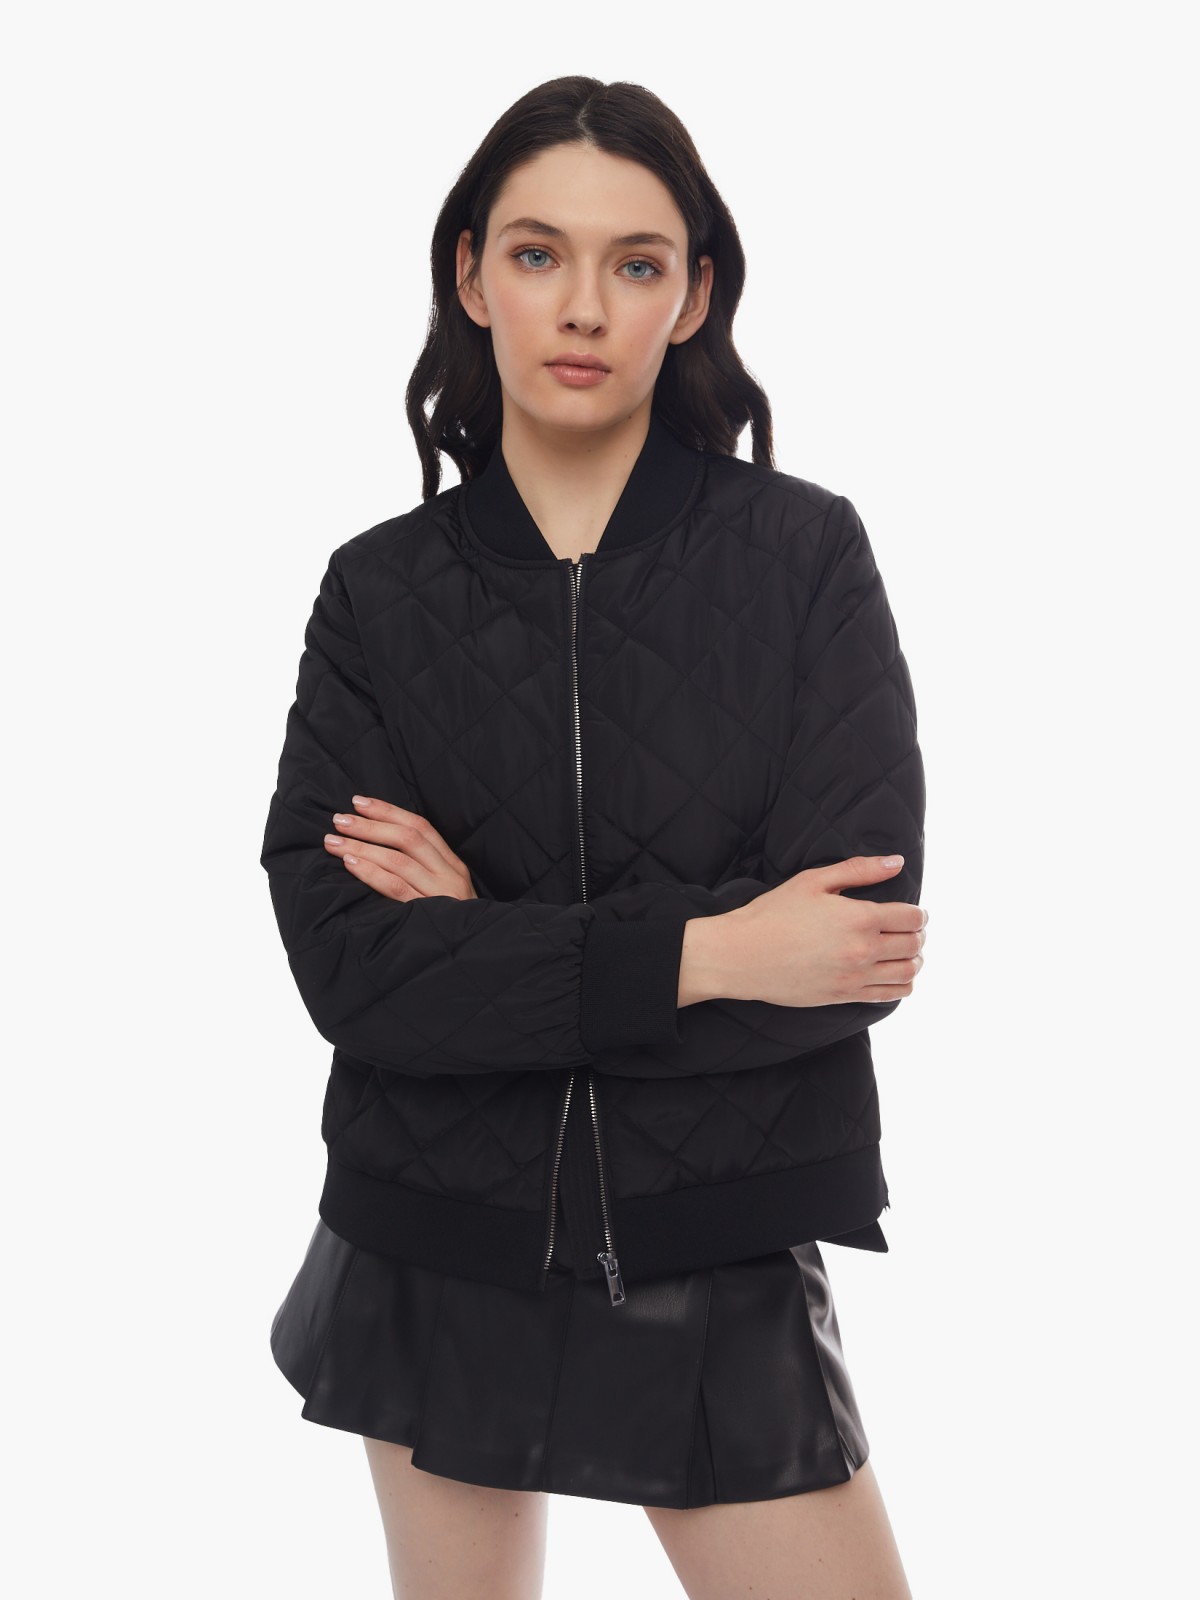 Тёплая куртка-бомбер на синтепоне со стёжкой zolla 024125102224, цвет черный, размер XS - фото 1